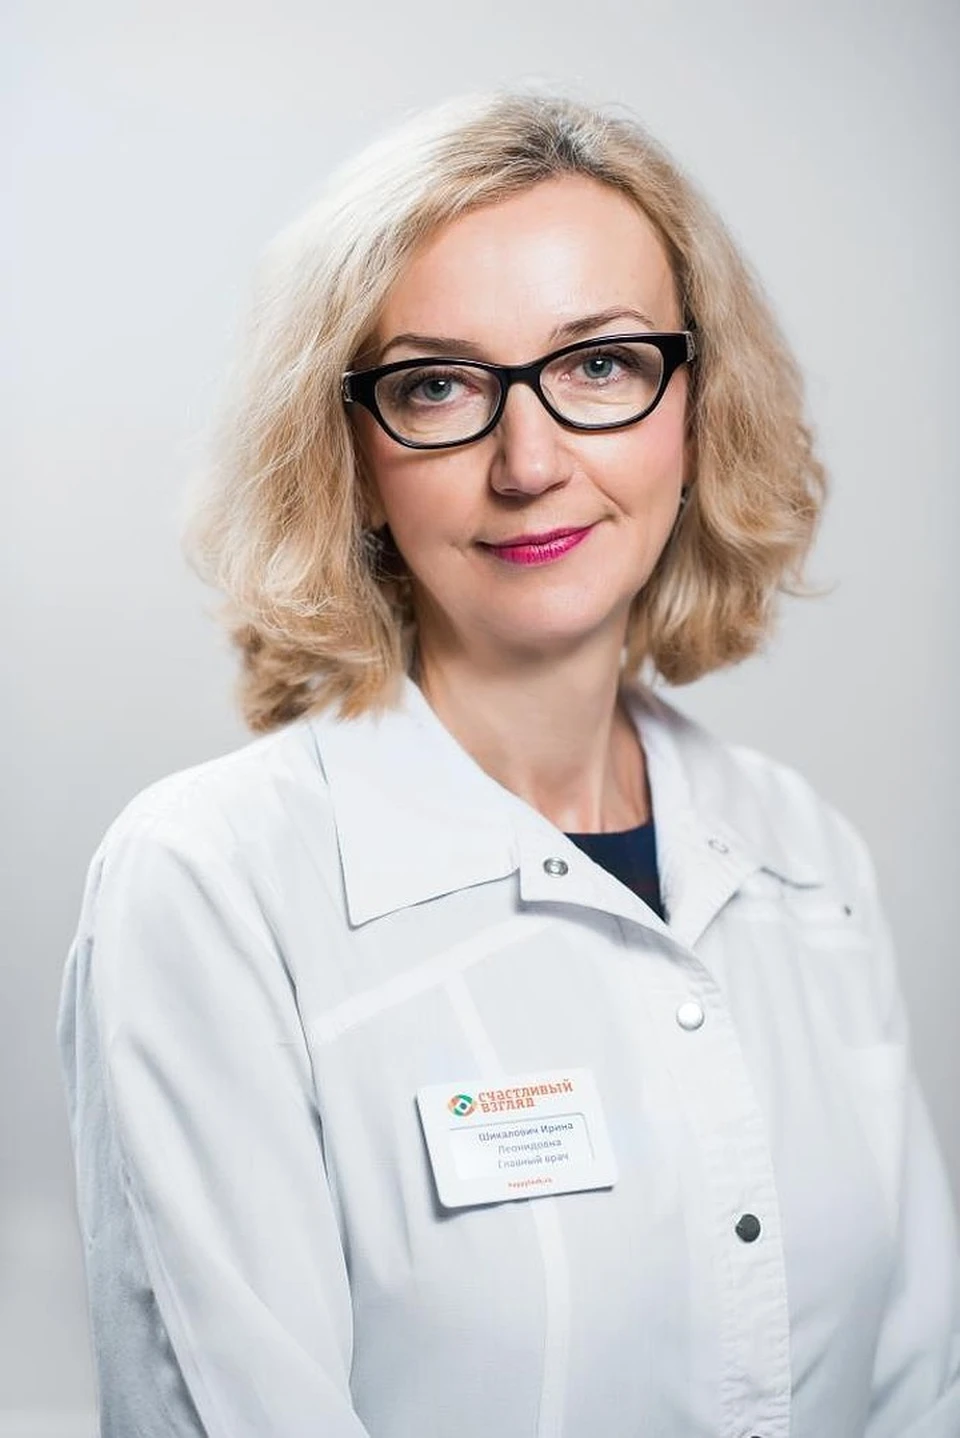 Ирина Шикалович рекомендует проверять зрение не реже одного раза в год.